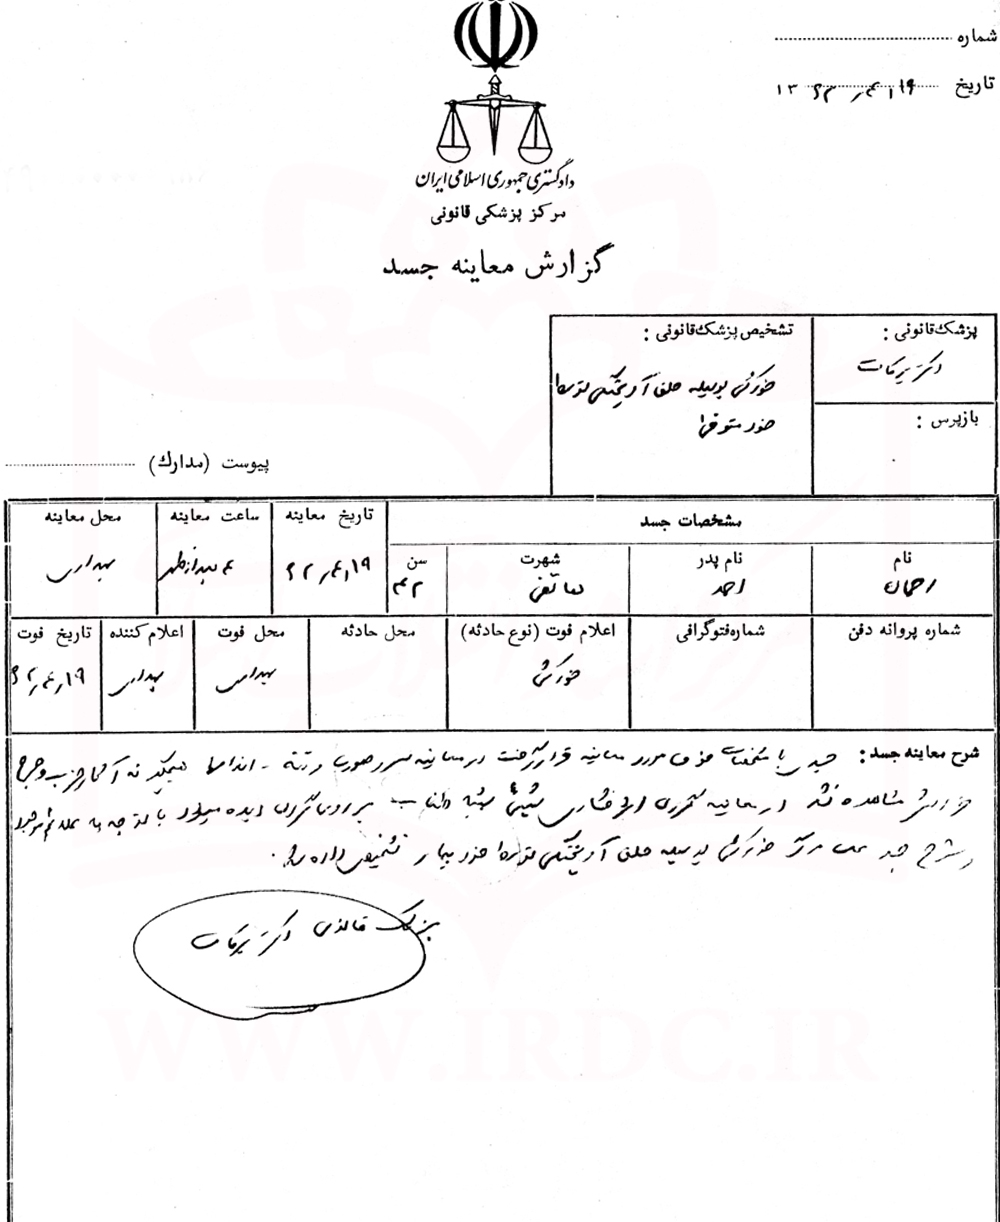 سندی از خودکشی رحمان هاتفی در زندان/ گزارش پزشکی قانونی درباره خودکشی یکی از اعضای حزب توده در سال 62